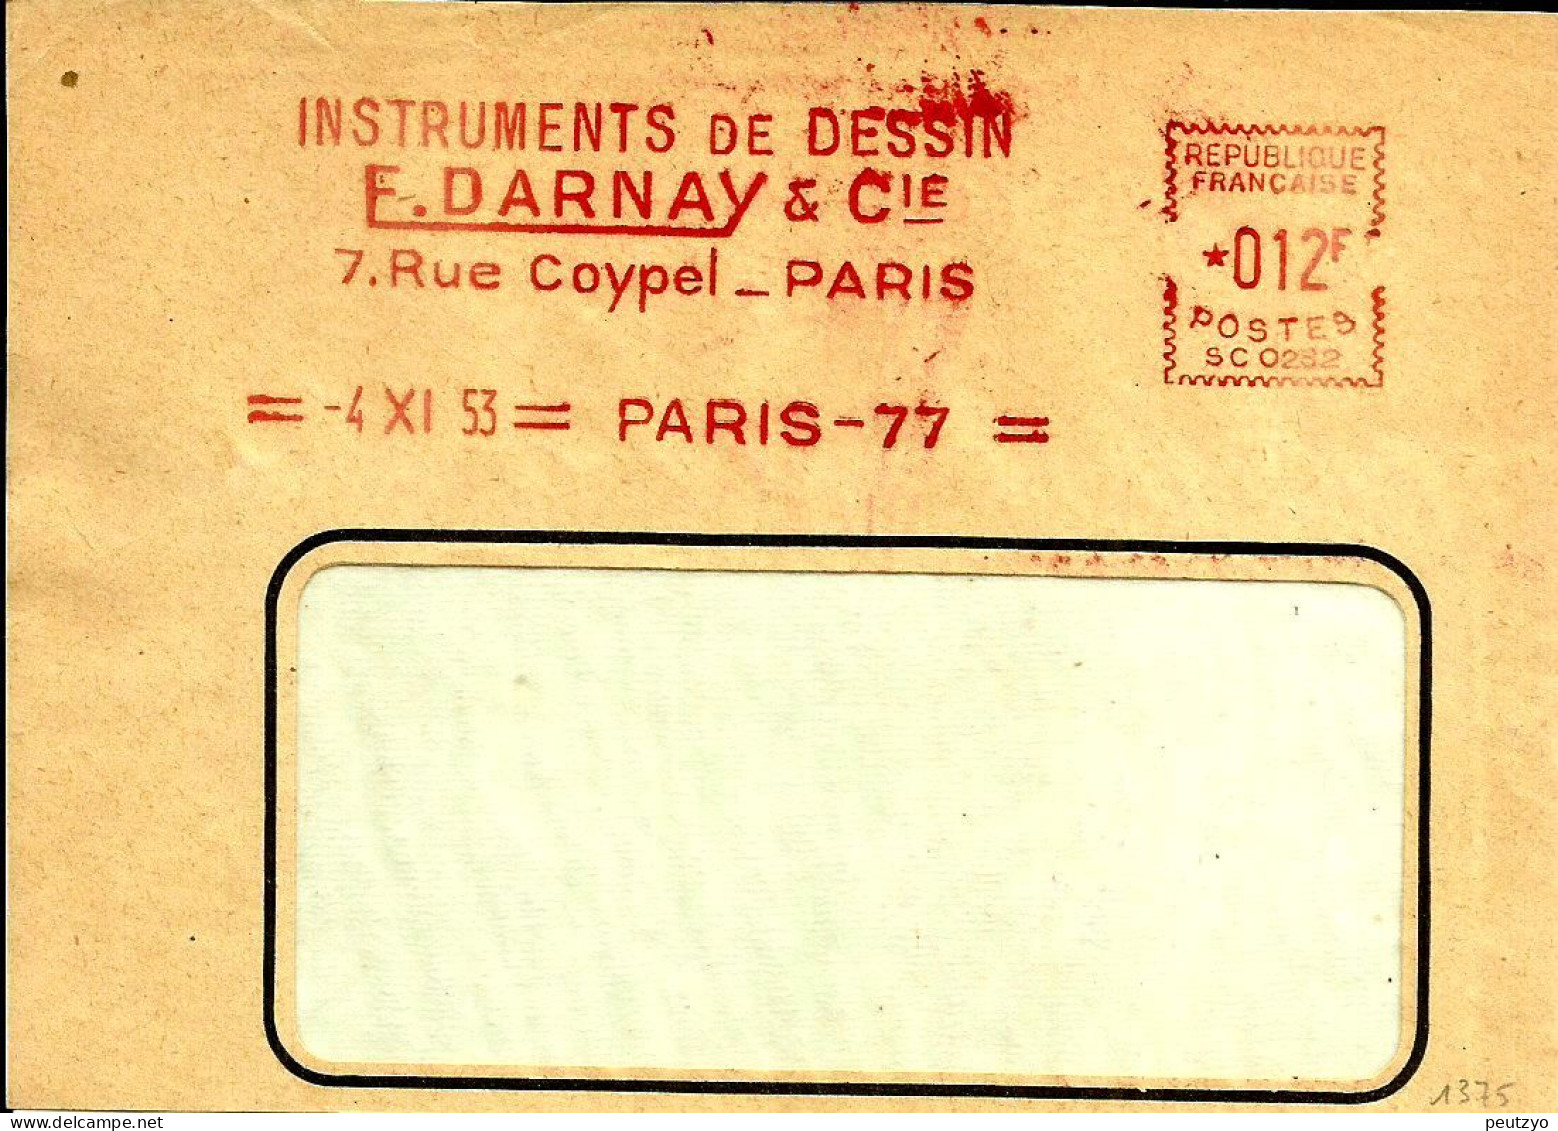 EMA Satas SC 1953 Instruments Dessin Darnay  Metier  Paris   A77/37 - Usines & Industries